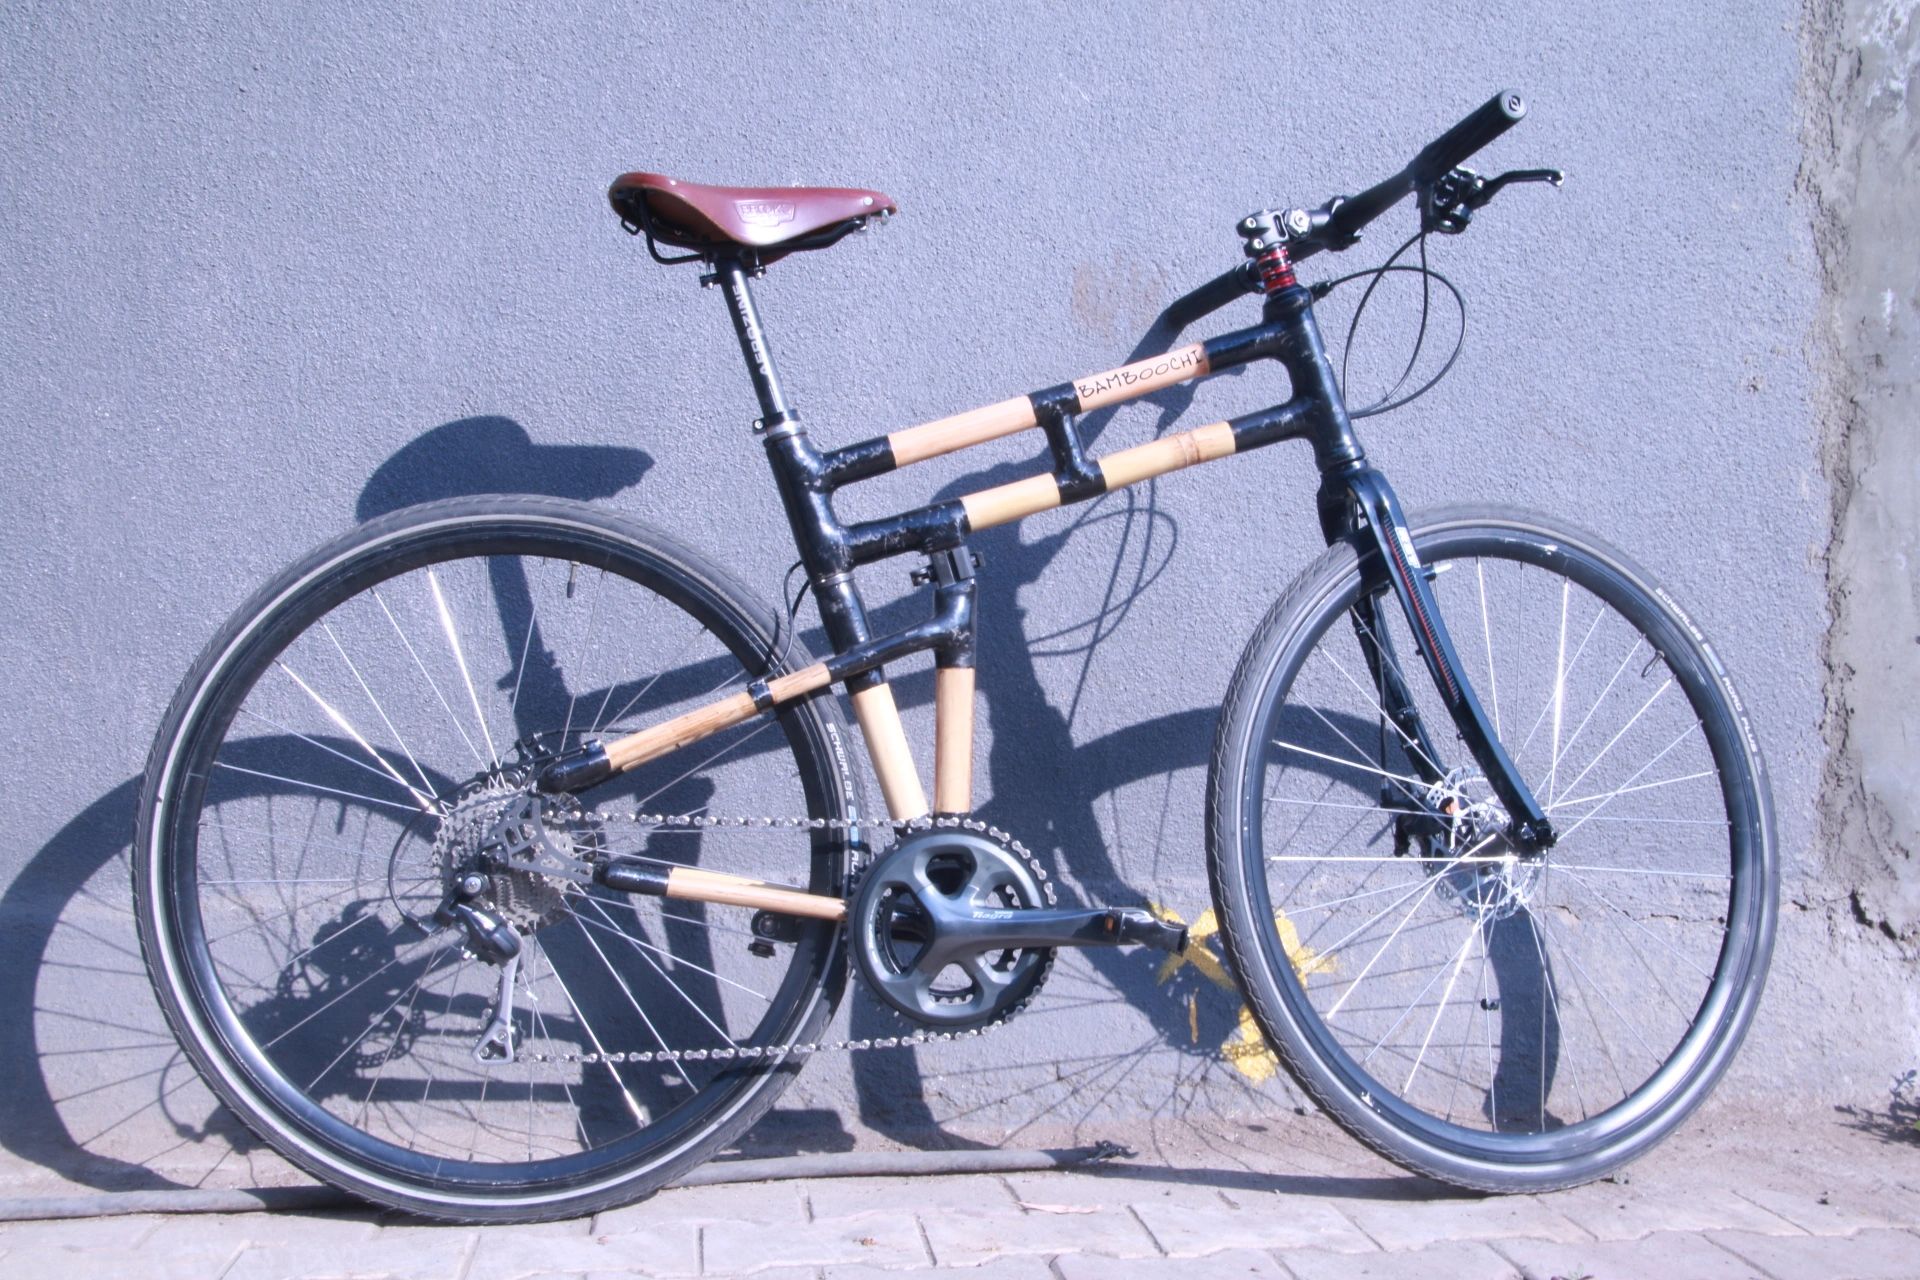 Bamboochi Folding bicycle.